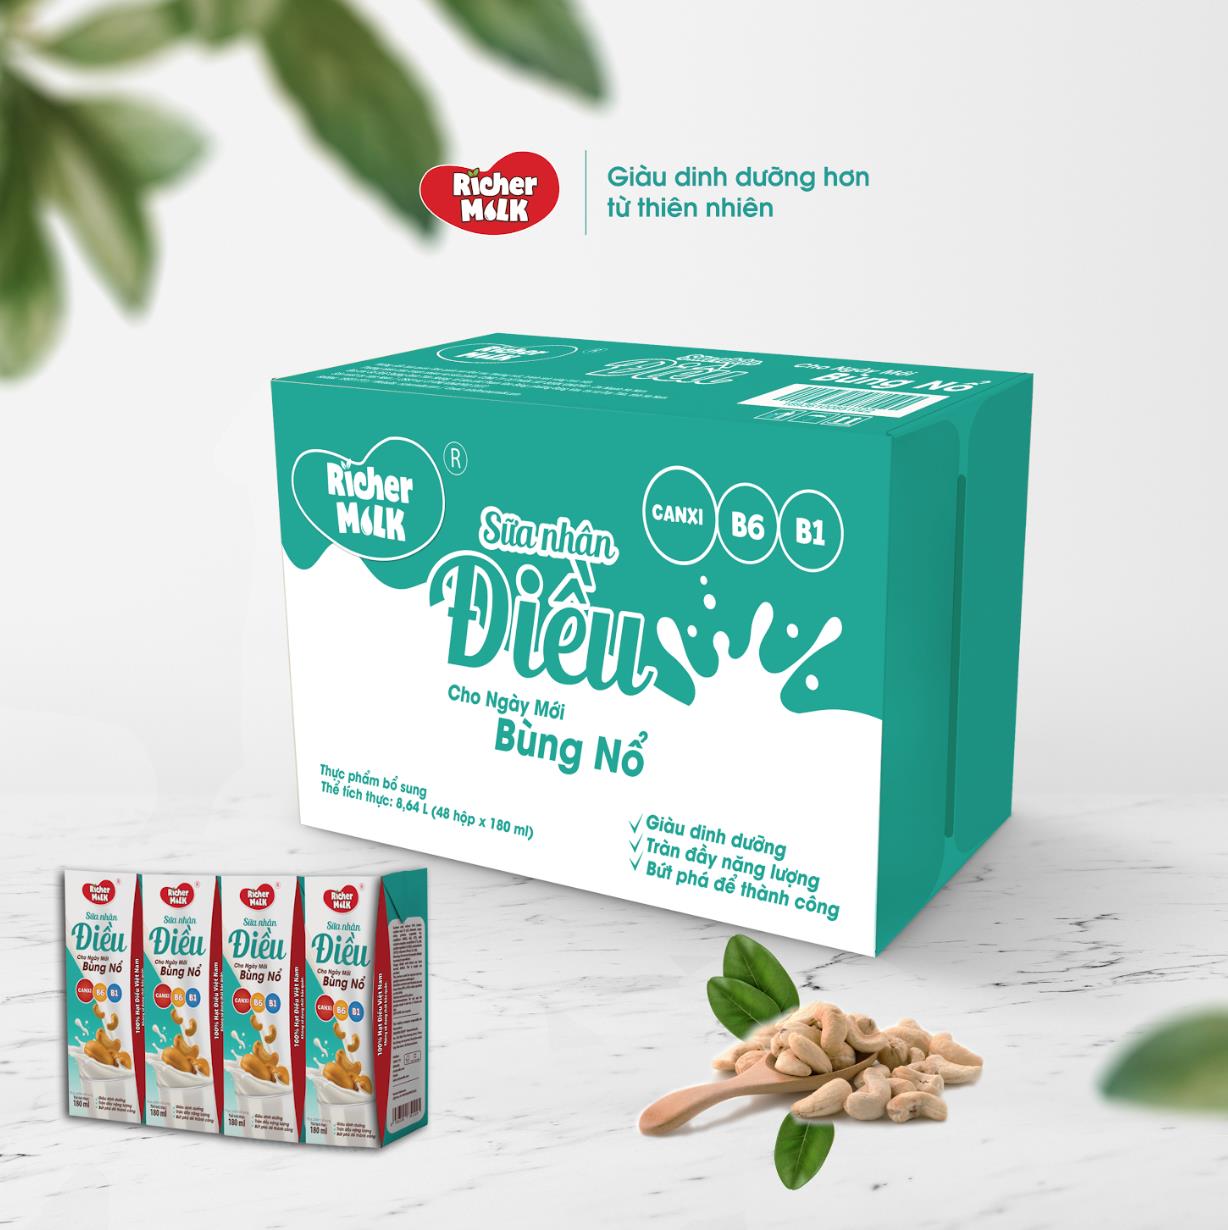 Richer Milk - thương hiệu sữa mang hương vị nguyên bản của hạt điều Việt Nam - Ảnh 2.